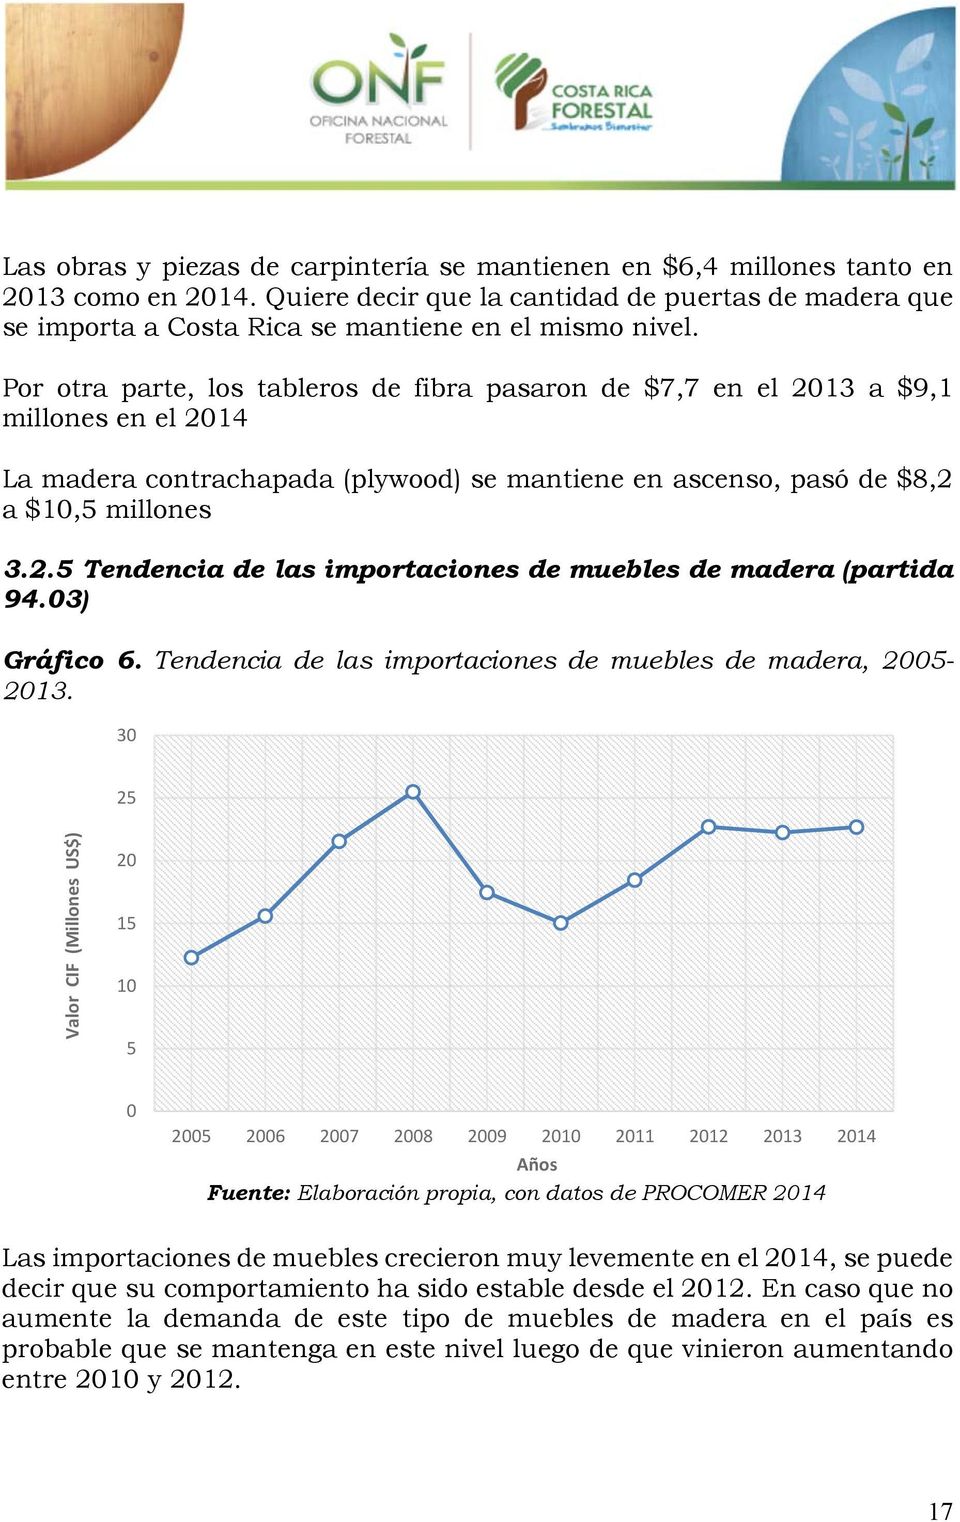 03) Gráfico 6. Tendencia de las importaciones de muebles de madera, 2005-2013.